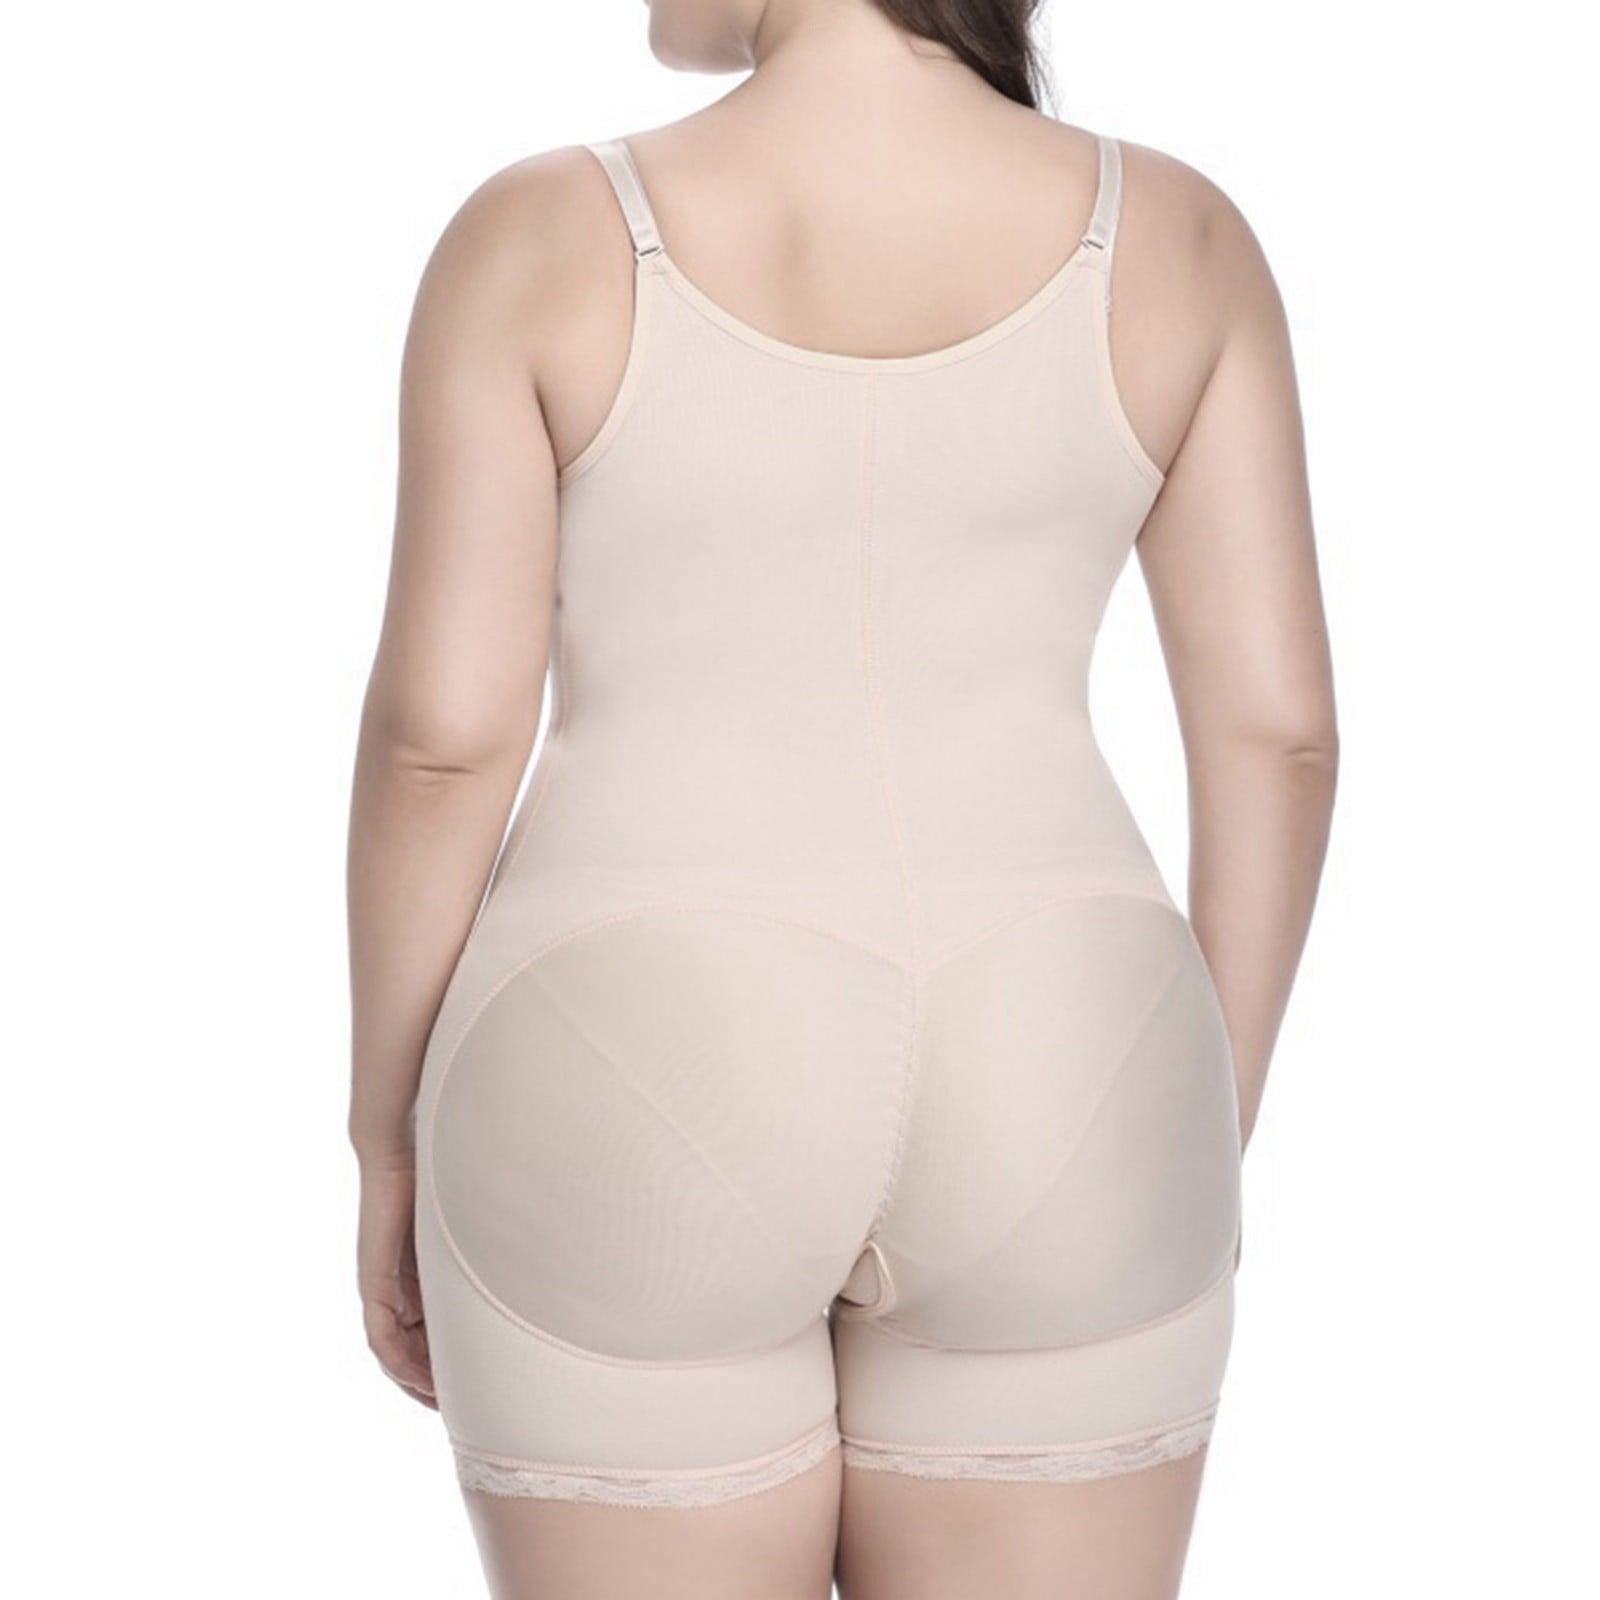 Herrnalise Plus Size Corset Shapewear Women's Body Shaping Clothing  Postpartum Waist Tightening Binding Body Tightening Slim Top Tightening  Belly